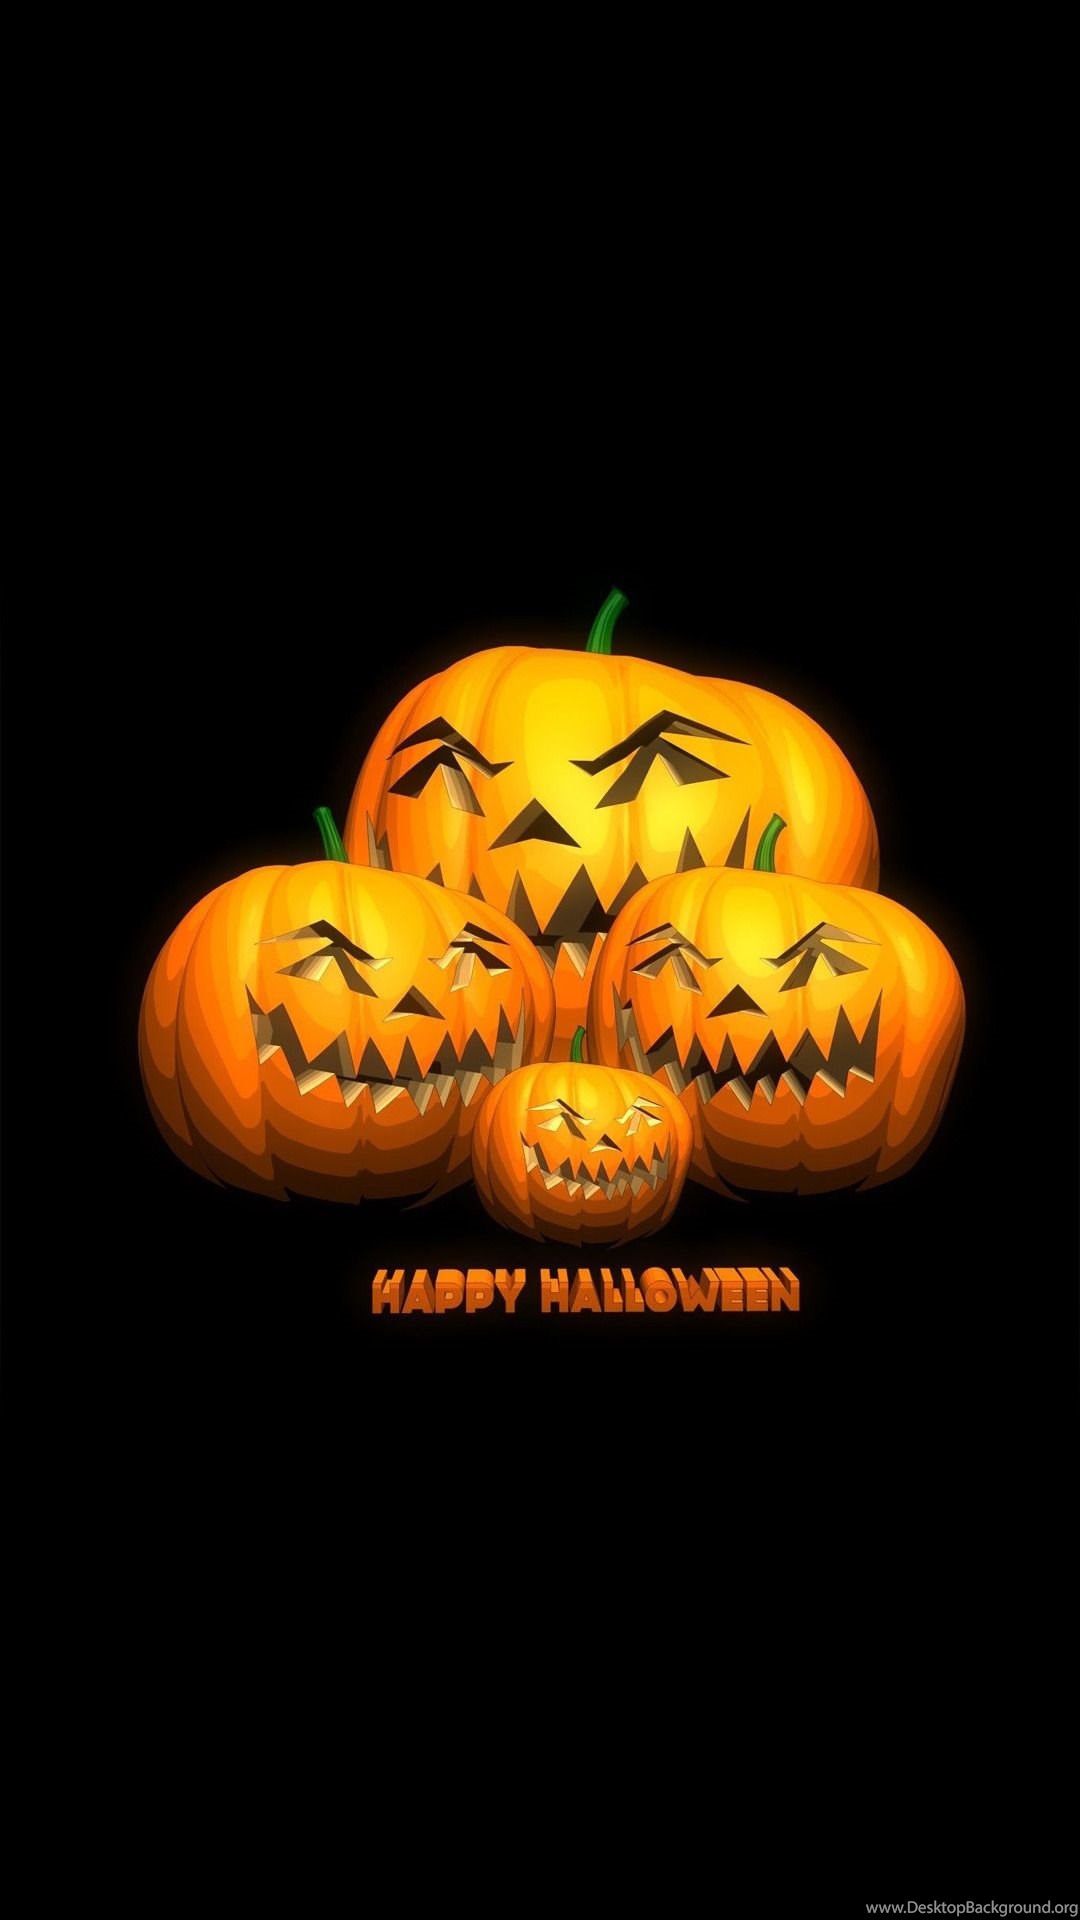 Happy Halloween Mobile Wallpaper 3746 Desktop Background